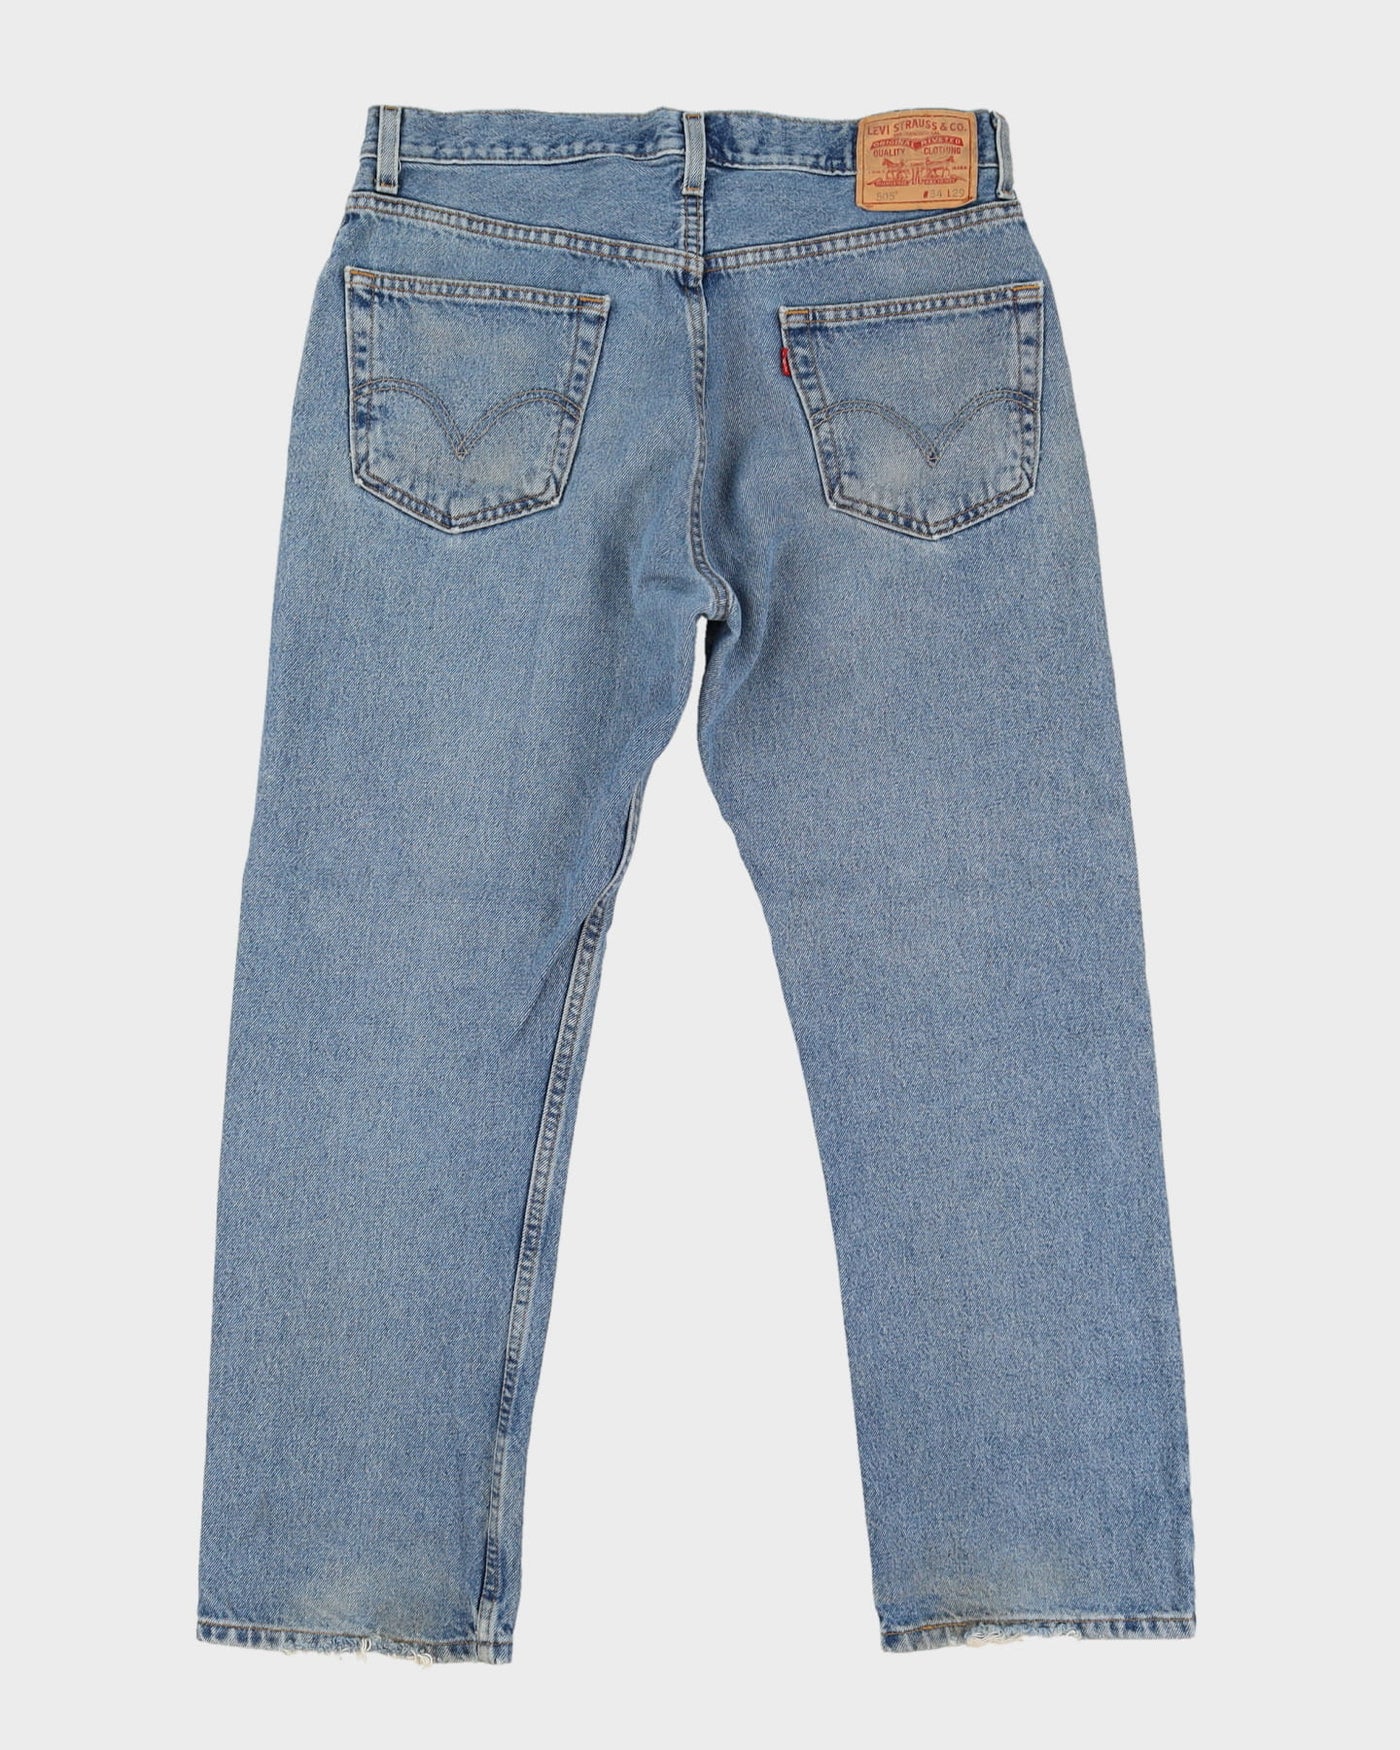 Levi's 505 Blue Jeans - W34 L29